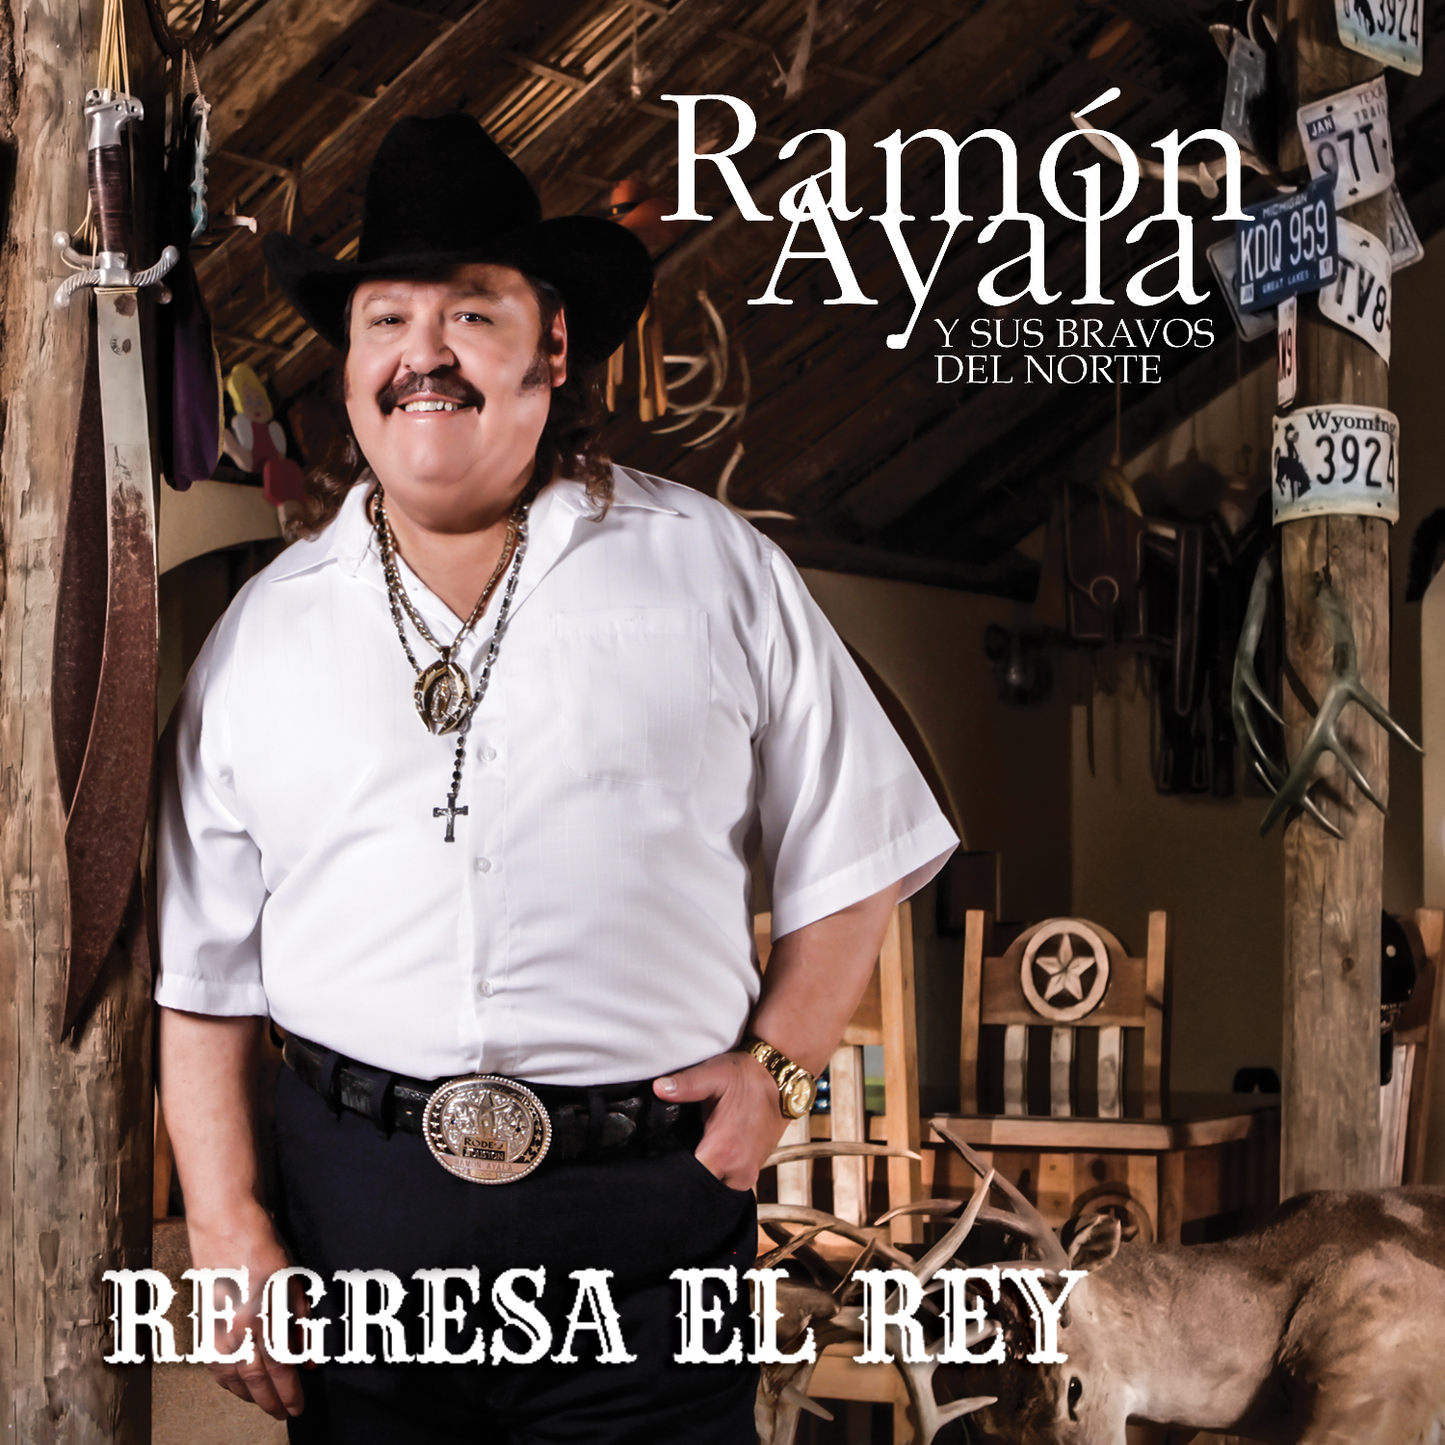 Ramon Ayala Y Sus Bravos Del Norte - Regresa El Rey